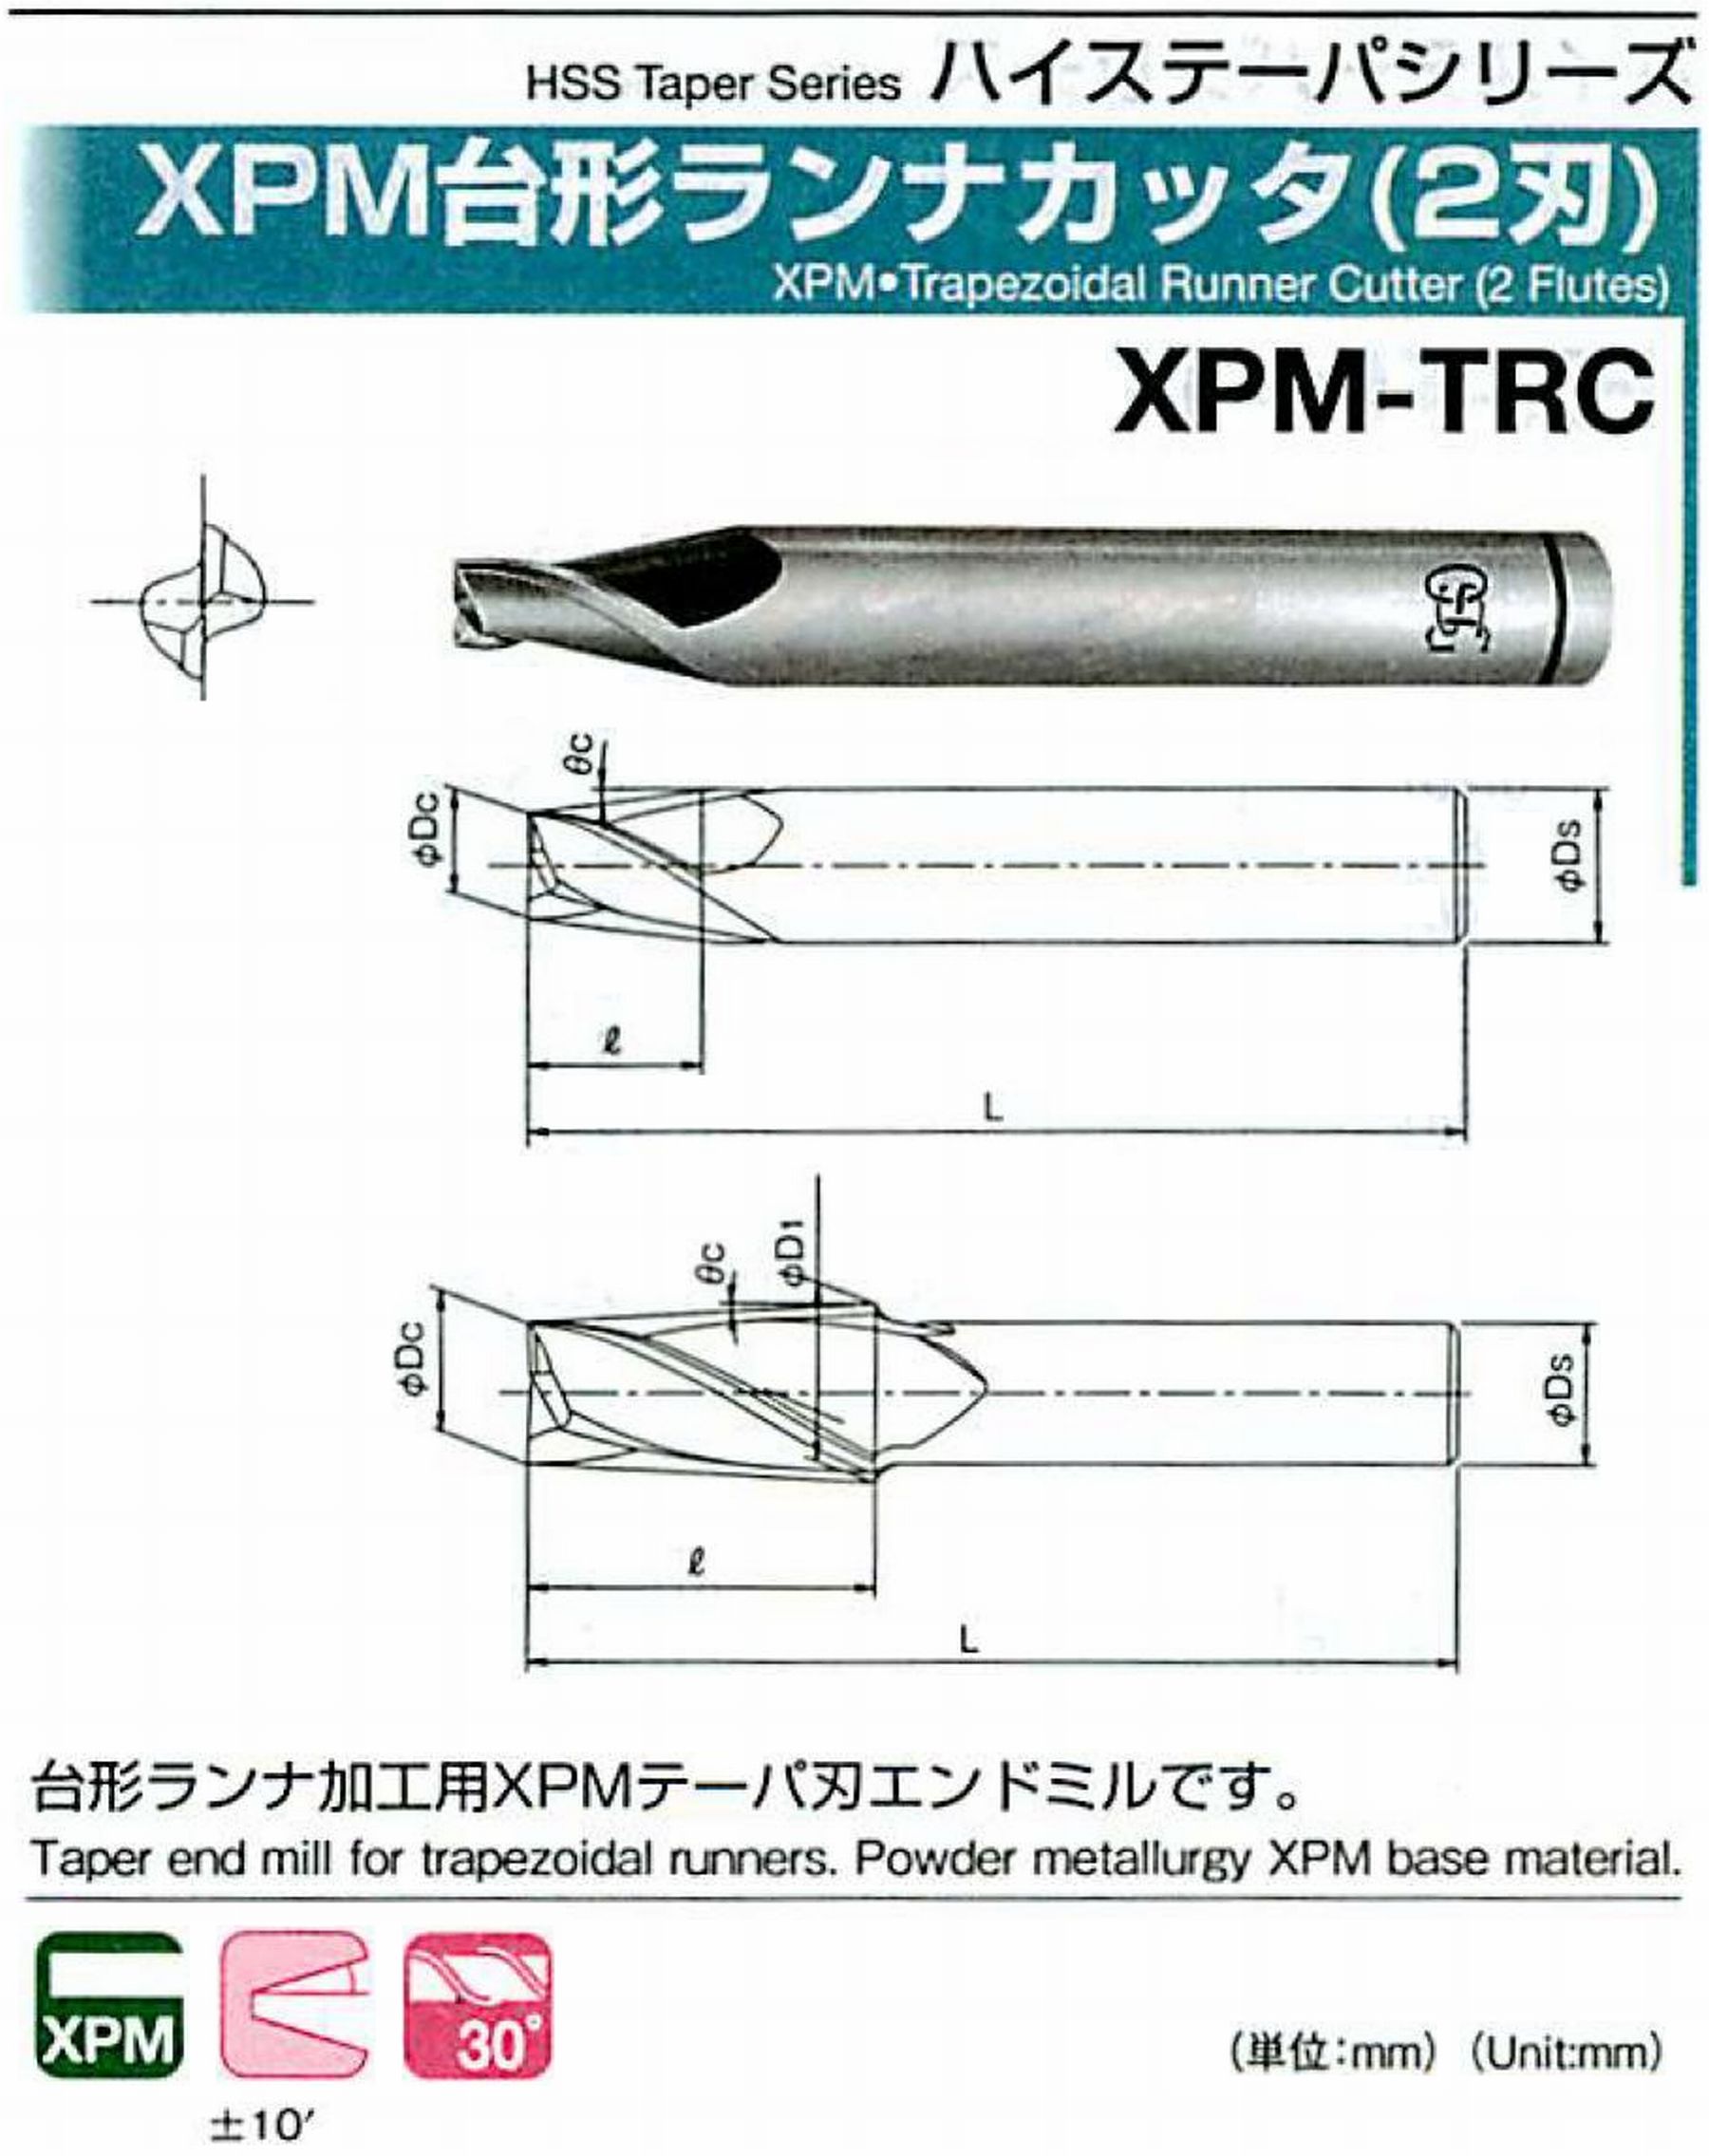 オーエスジー/OSG XPM台形ランナカッタ(2刃) XPM-TRC 外径×刃部テーパ半角4.5×7° 全長60 刃長9 シャンク径8mm